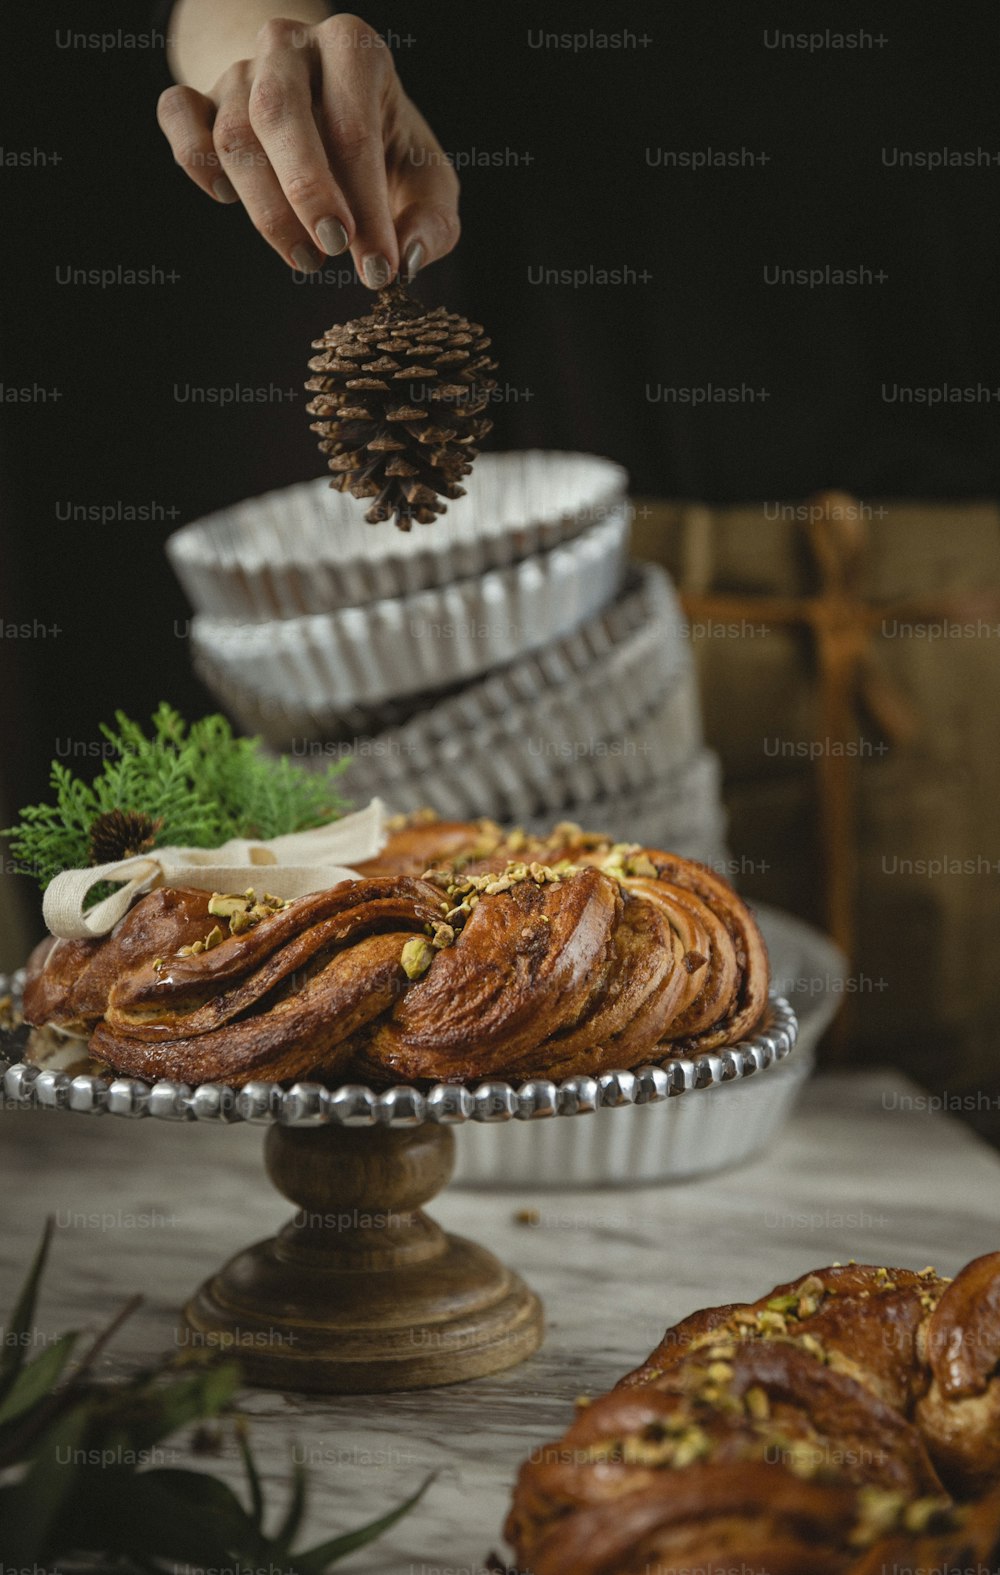 Una persona colocando un cono de pino encima de un pastel